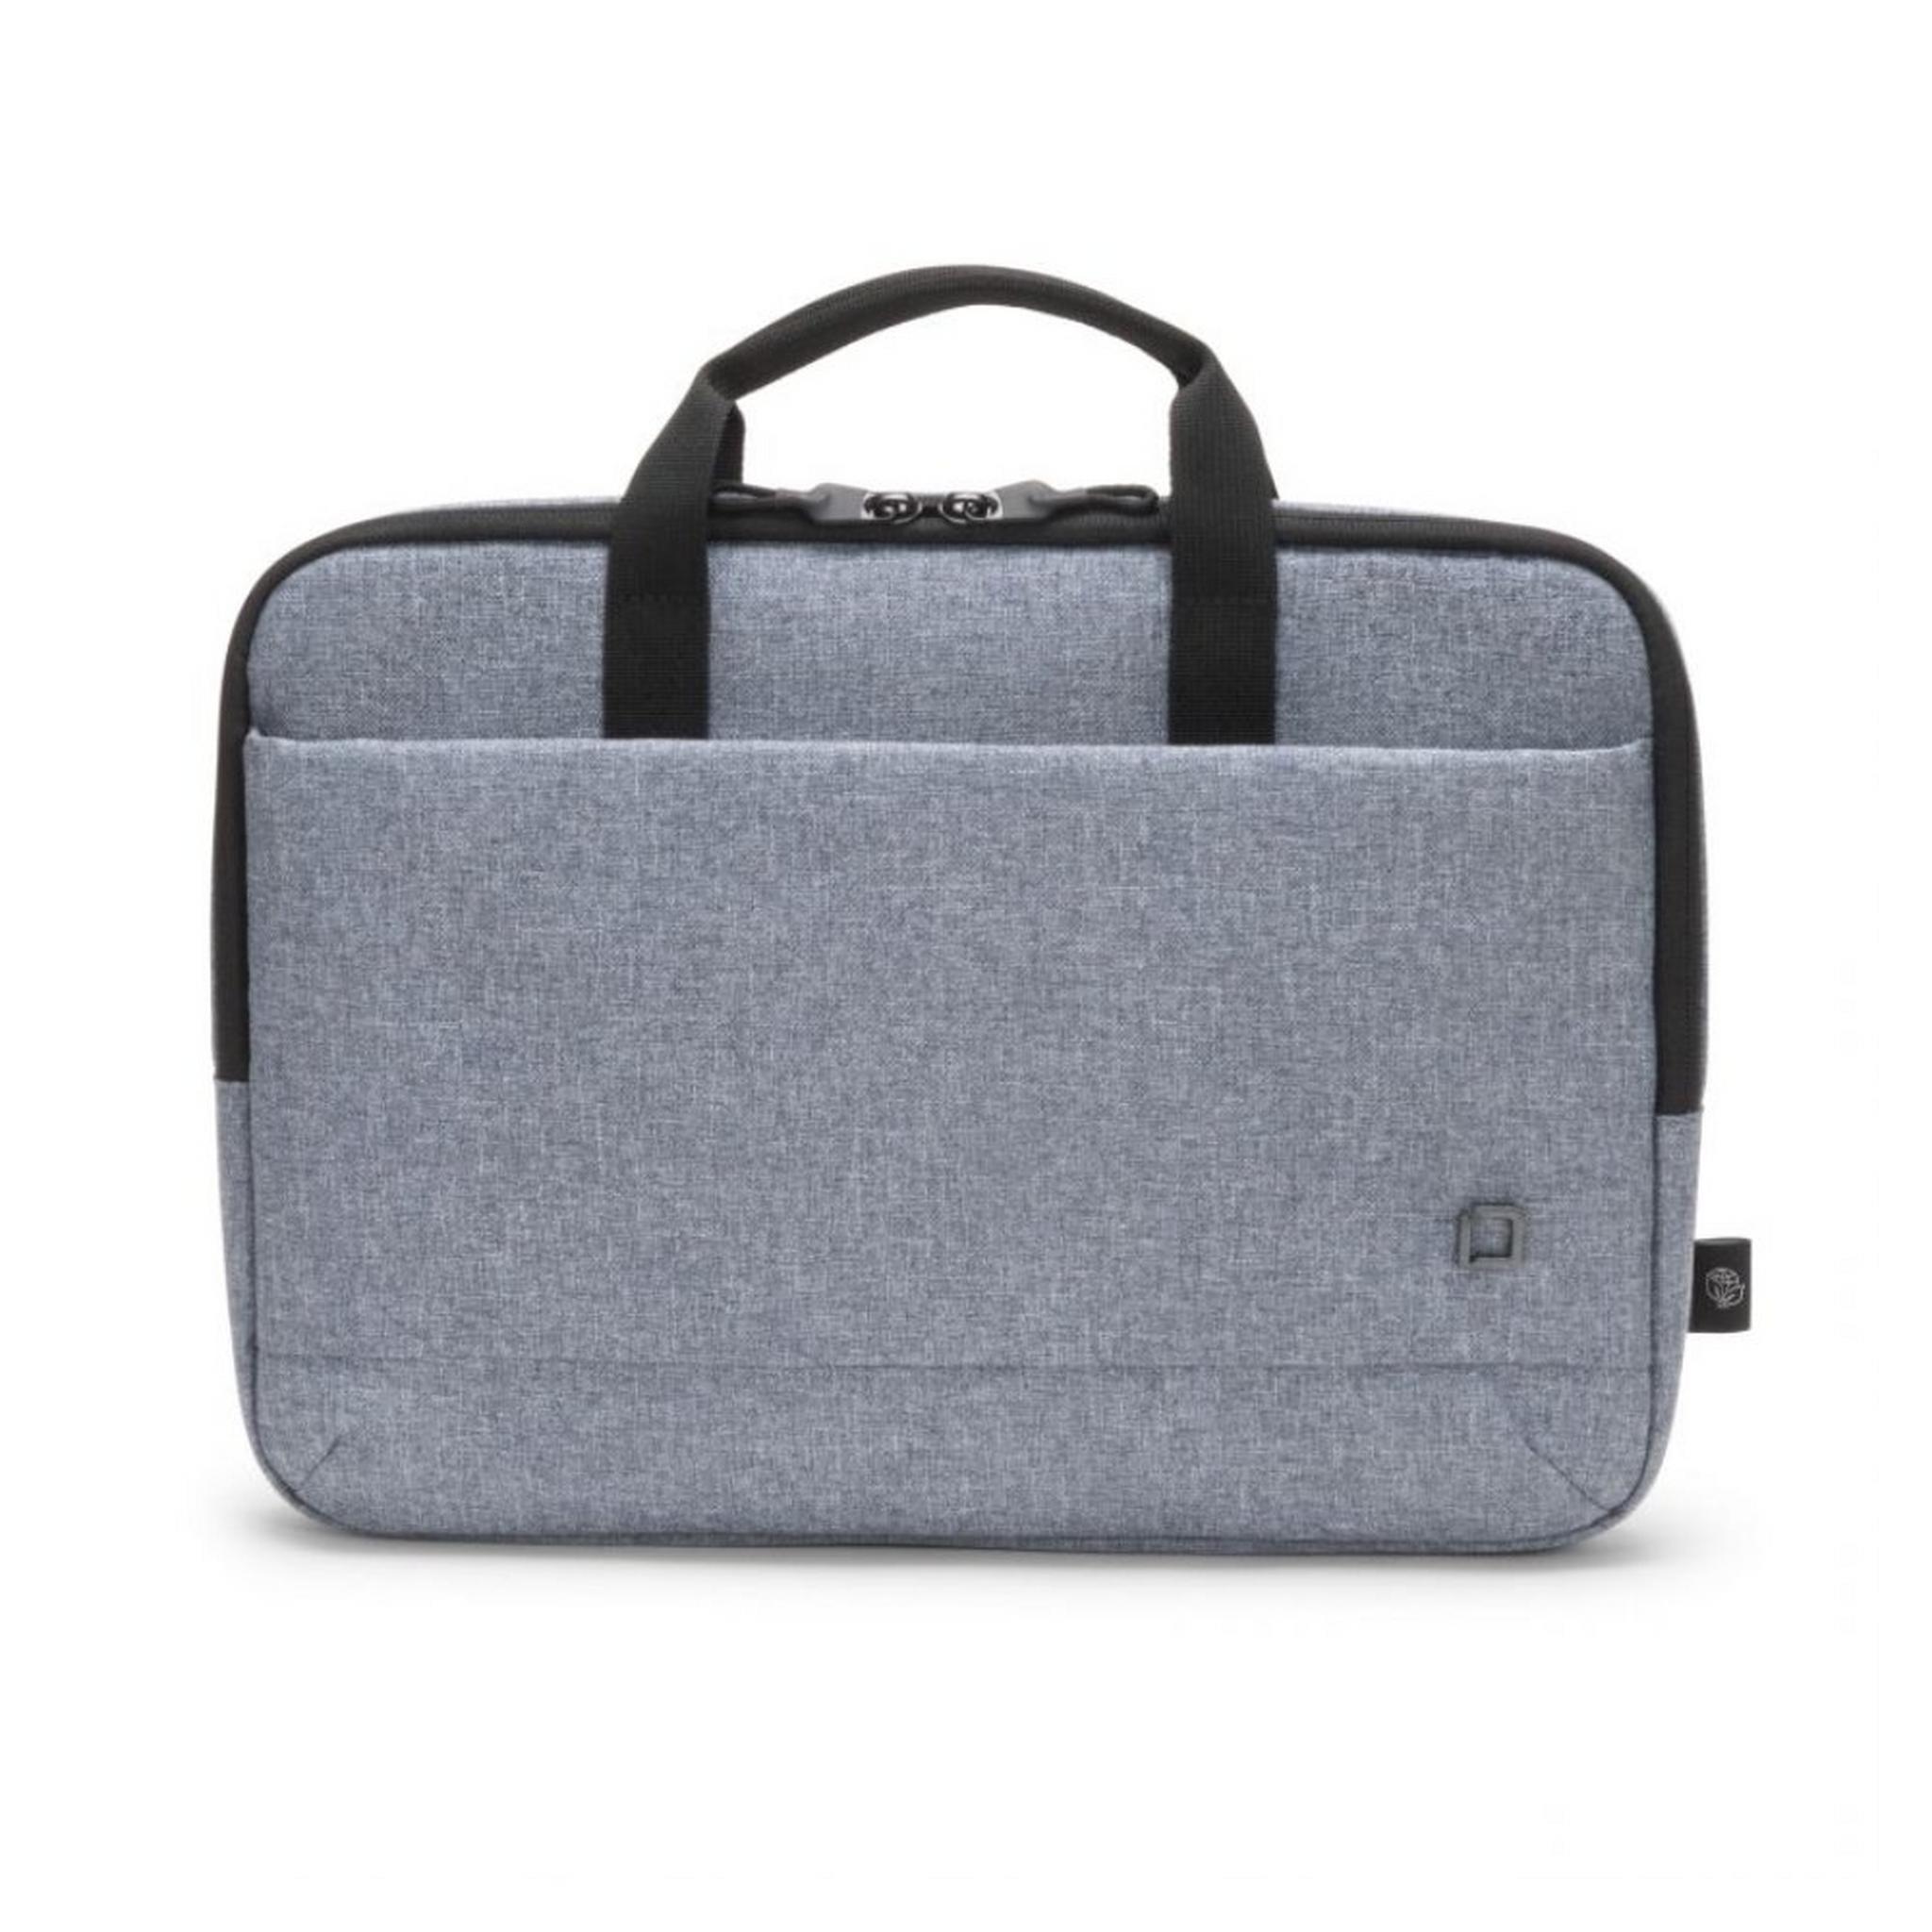 حقيبة ايكو سليم موشن للابتوب بحجم 15.6 بوصة من ديكوتا - أزرق